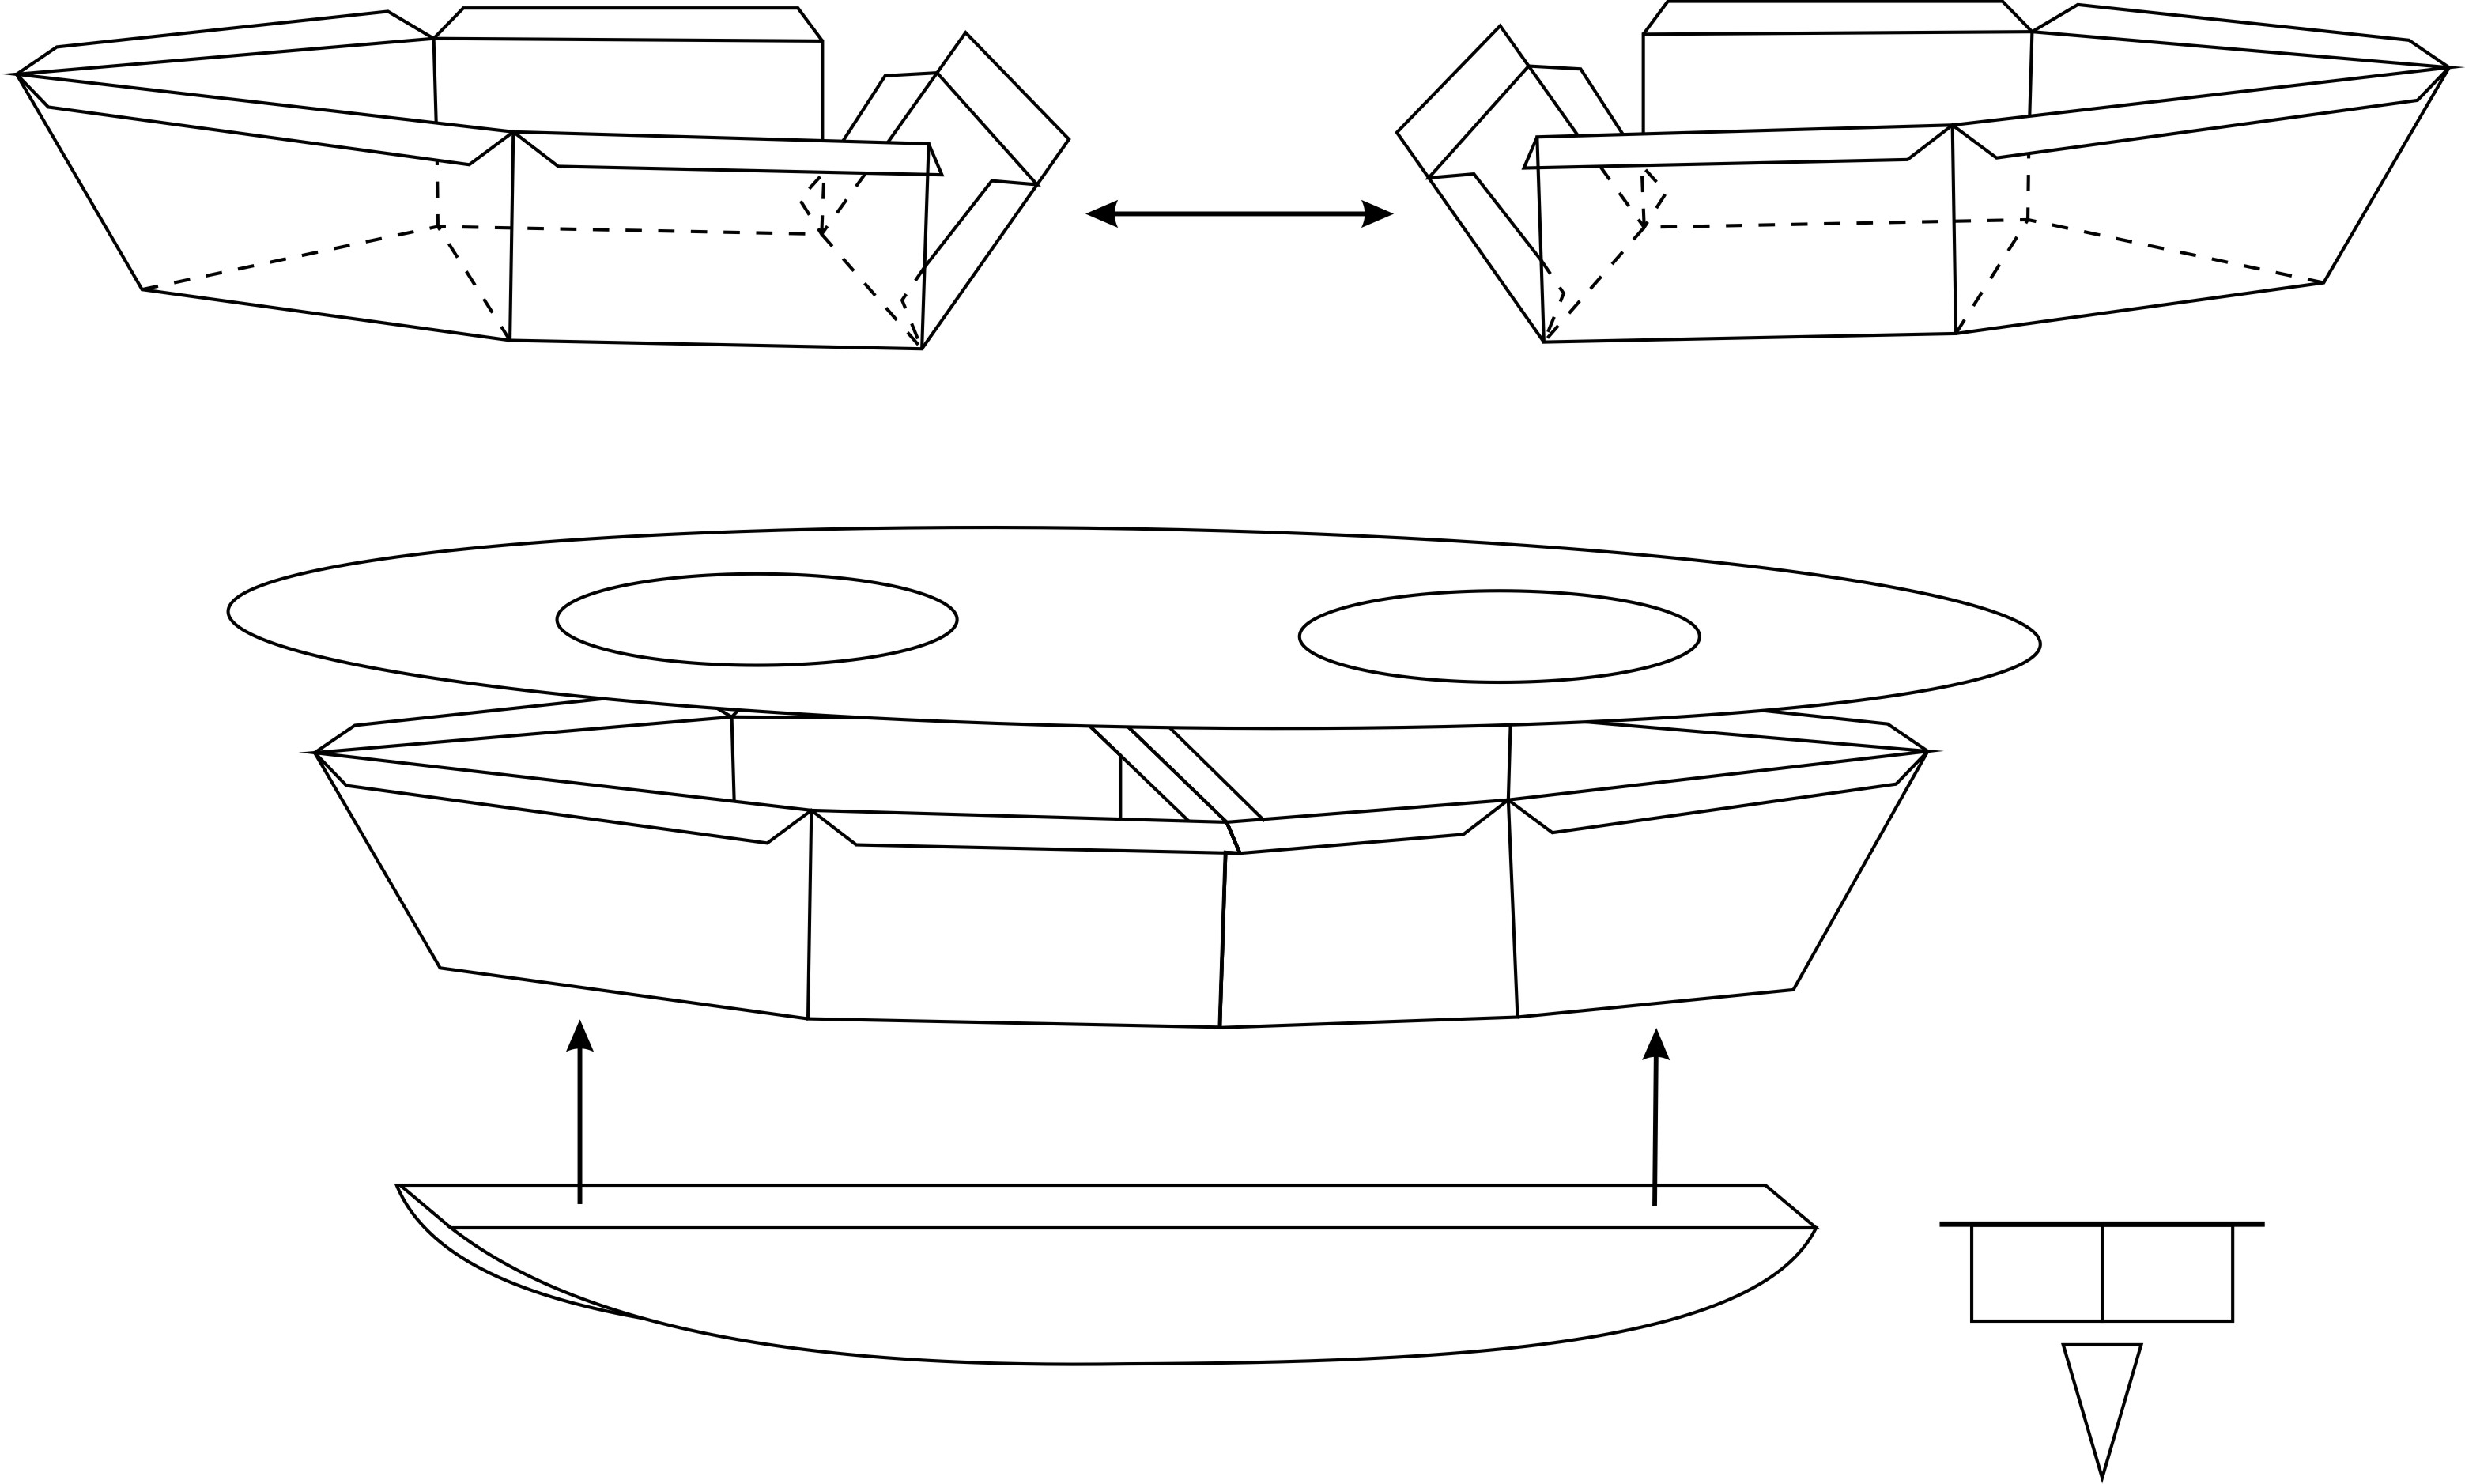 Методические рекомендации по изготовлению дирижабля для кружка начального технического моделирования